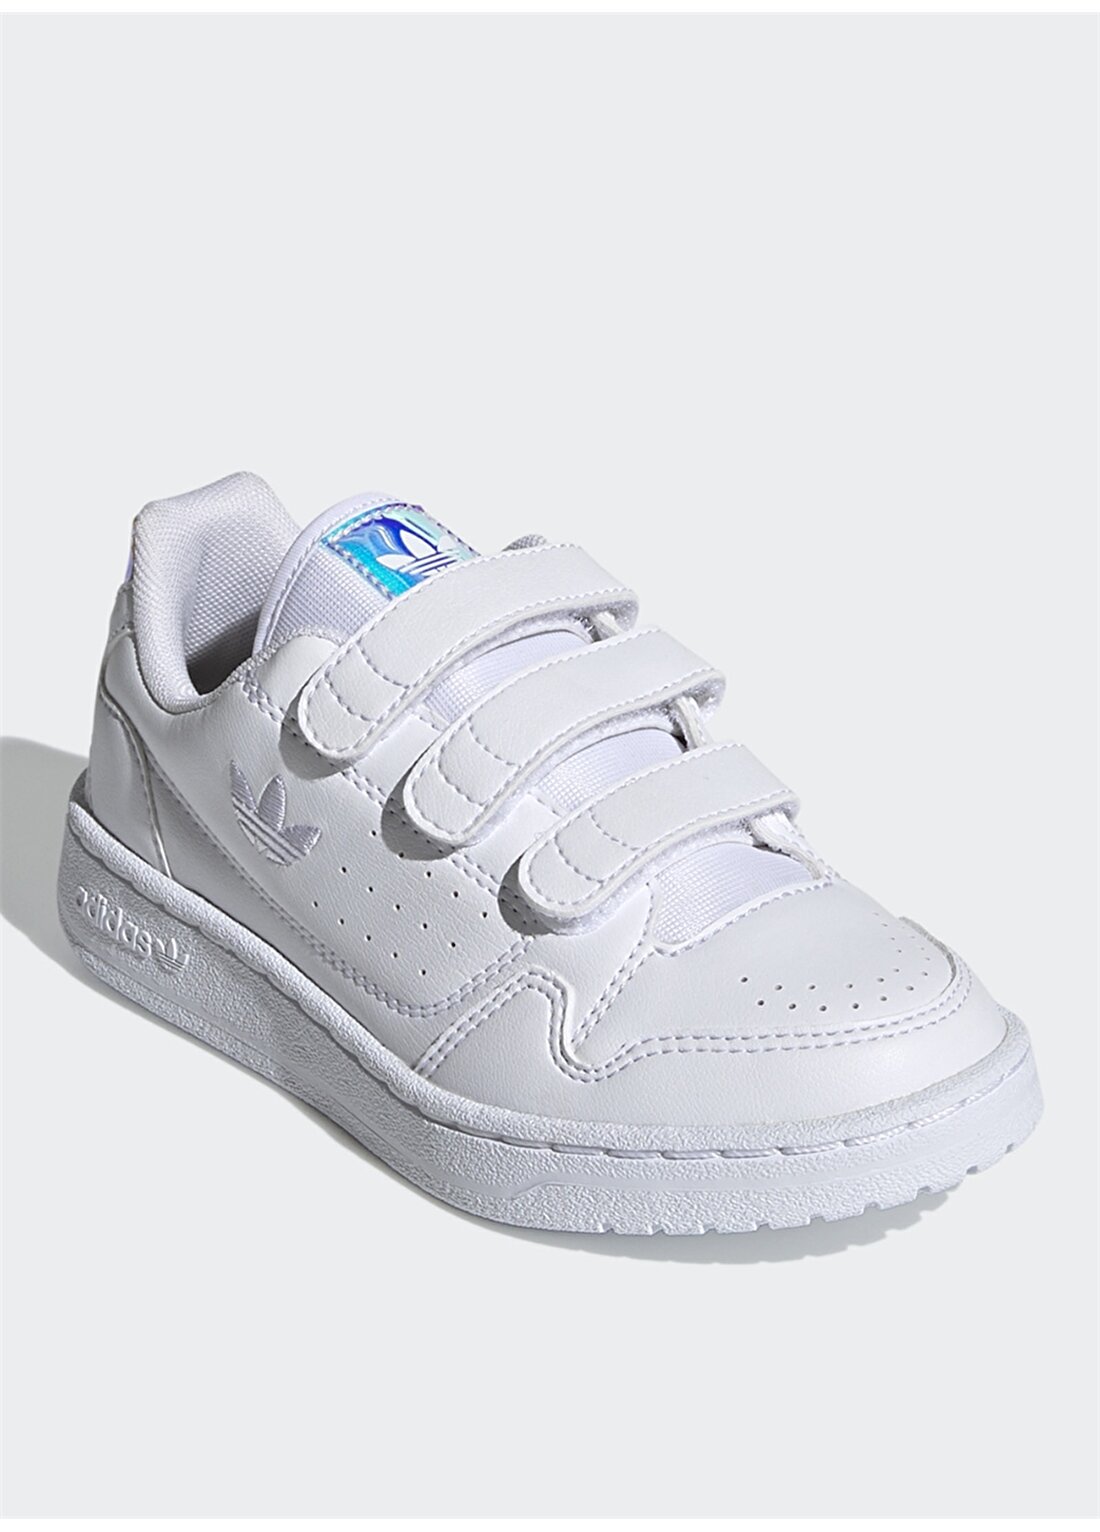 Adidas Beyaz Kız Çocuk Yürüyüş Ayakkabısı FY9847 NY 92 CF C